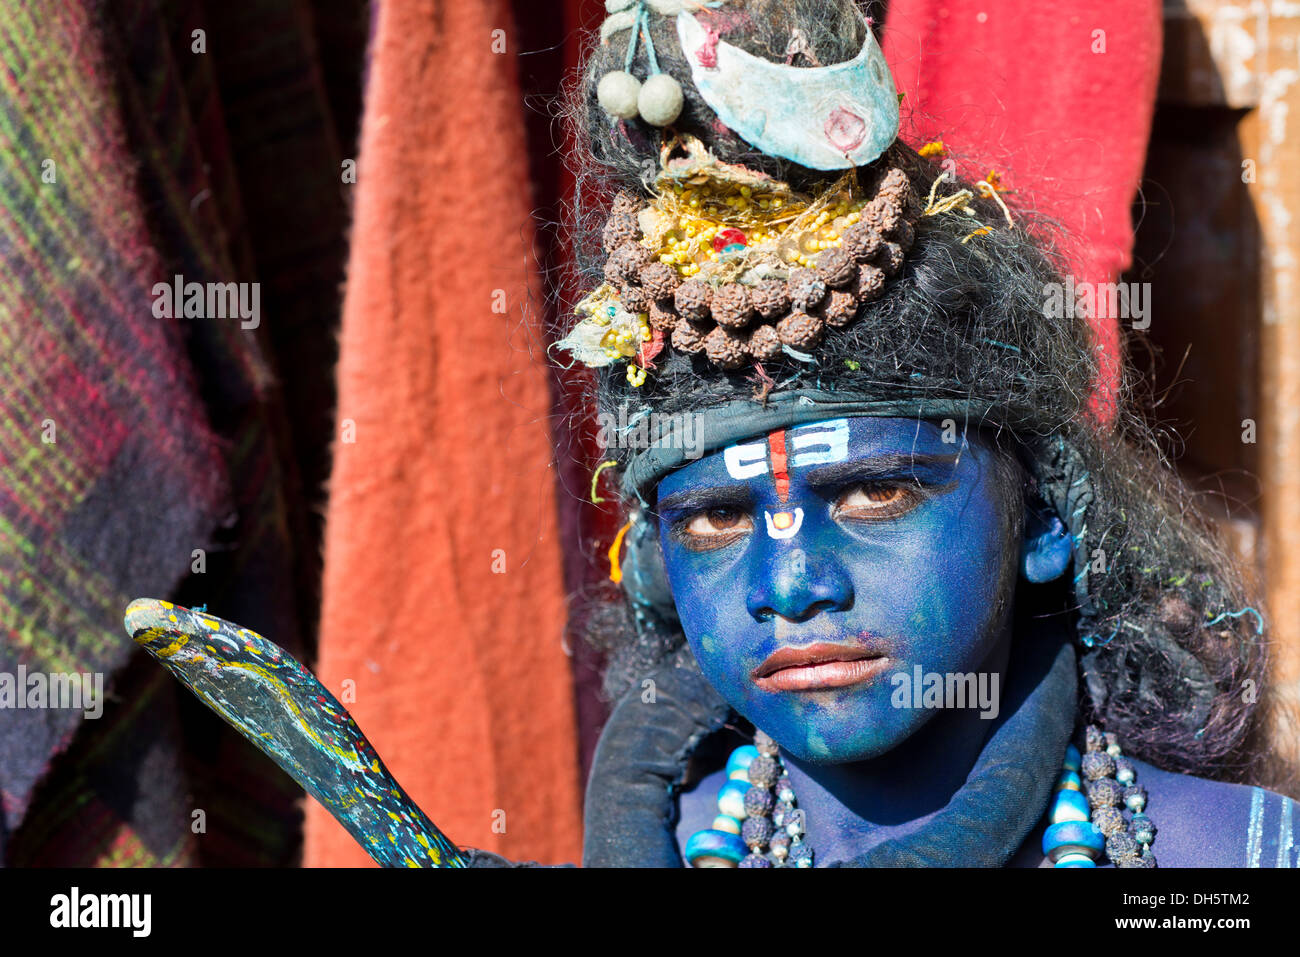 Ragazzo indiano, circa undici anni, trasformato con il trucco blu nel dio indù Shiva presso un festival indù, Pushkar, Rajasthan, India Foto Stock